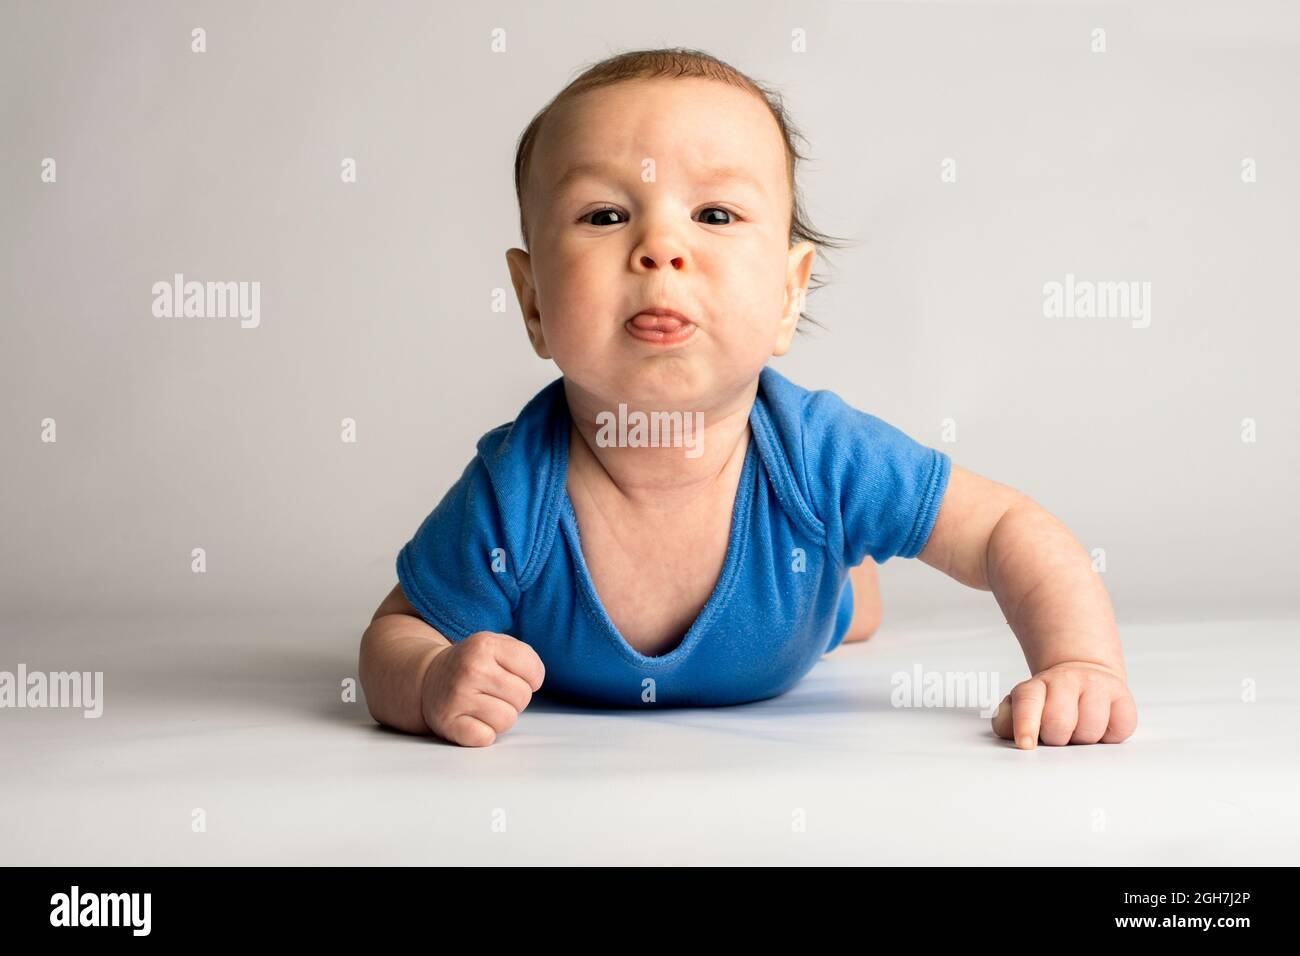 Anspruchsvoll, eigensinnig, stur, Baby. Baby in blauer Kleidung auf weißem Hintergrund. Stockfoto